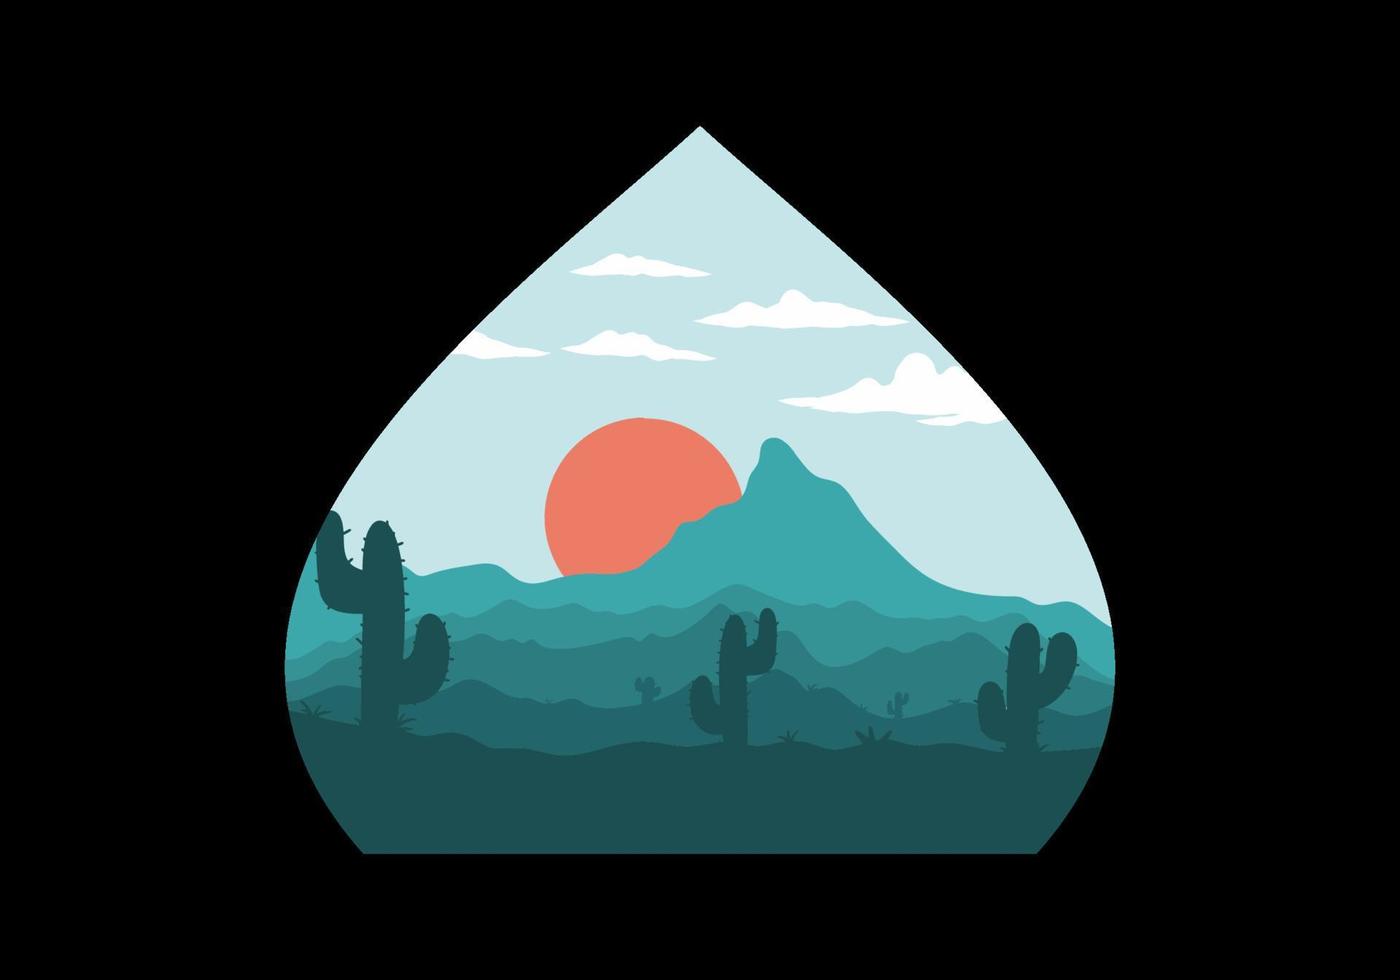 färgrik öken- landskap med kaktus träd illustration vektor